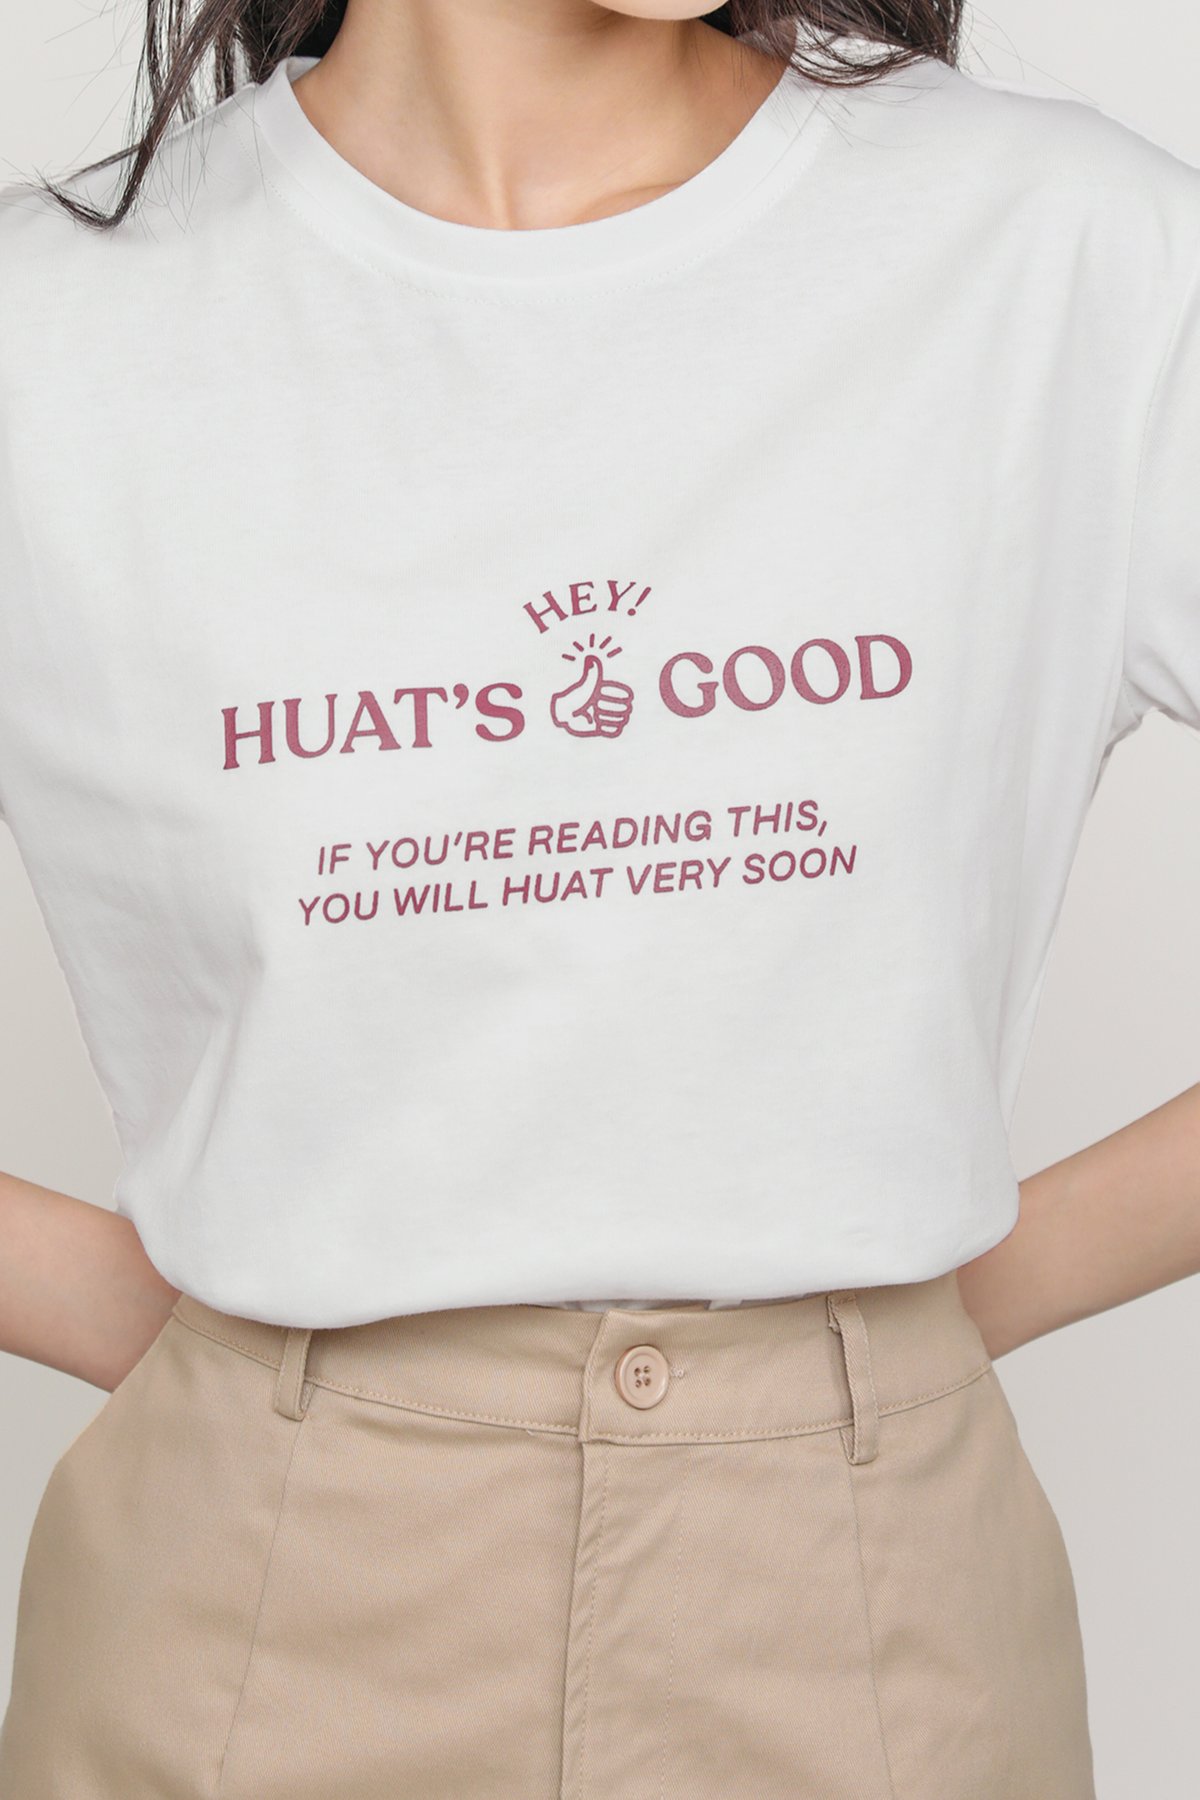 Huat's Good Tee (White)